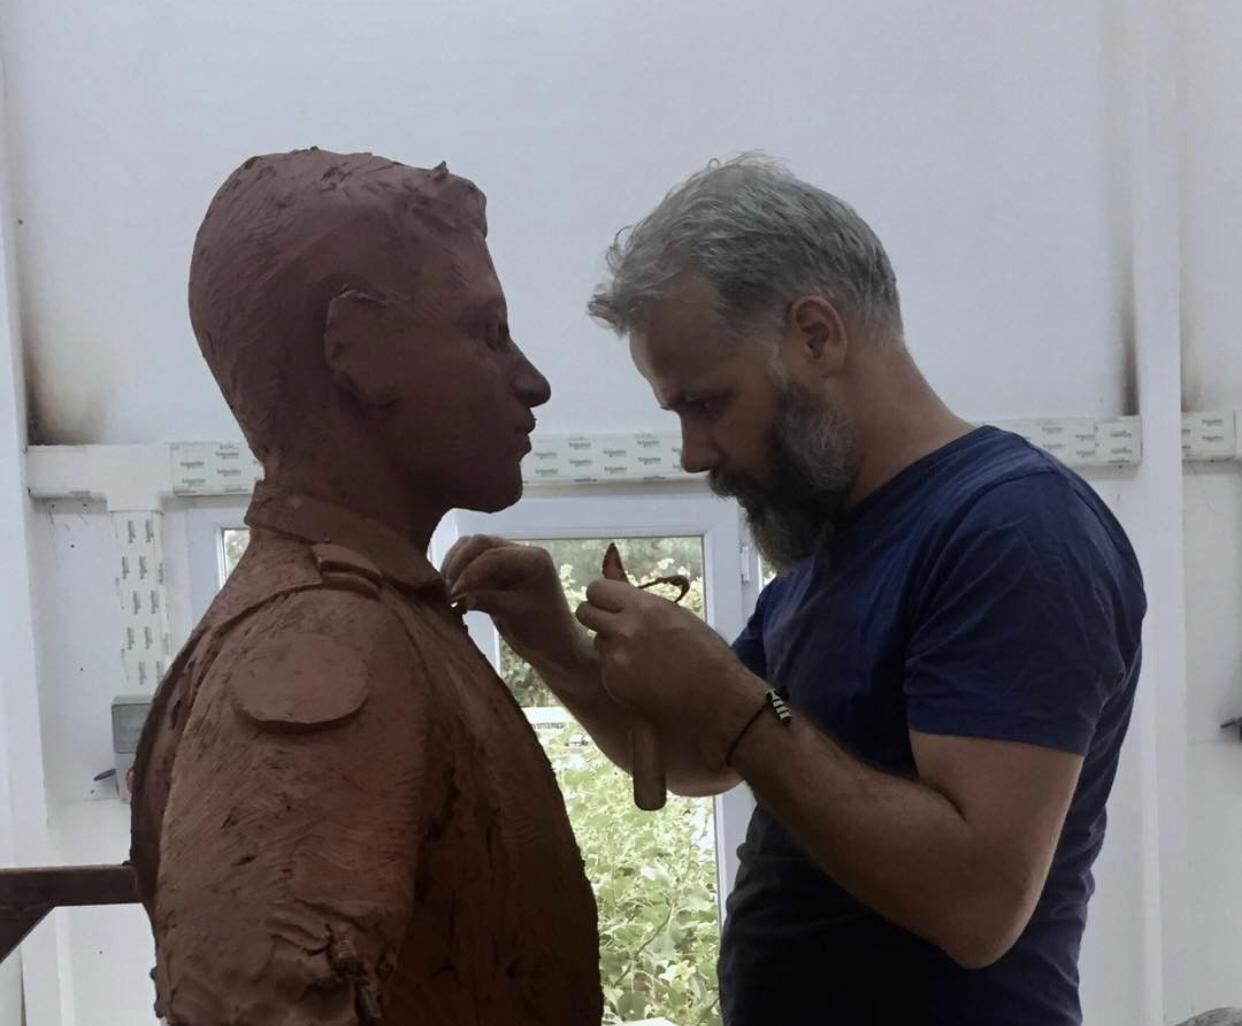 OMÜ'lü öğretim görevlisinin yaptığı heykeller Türkiye'yi süslüyor
